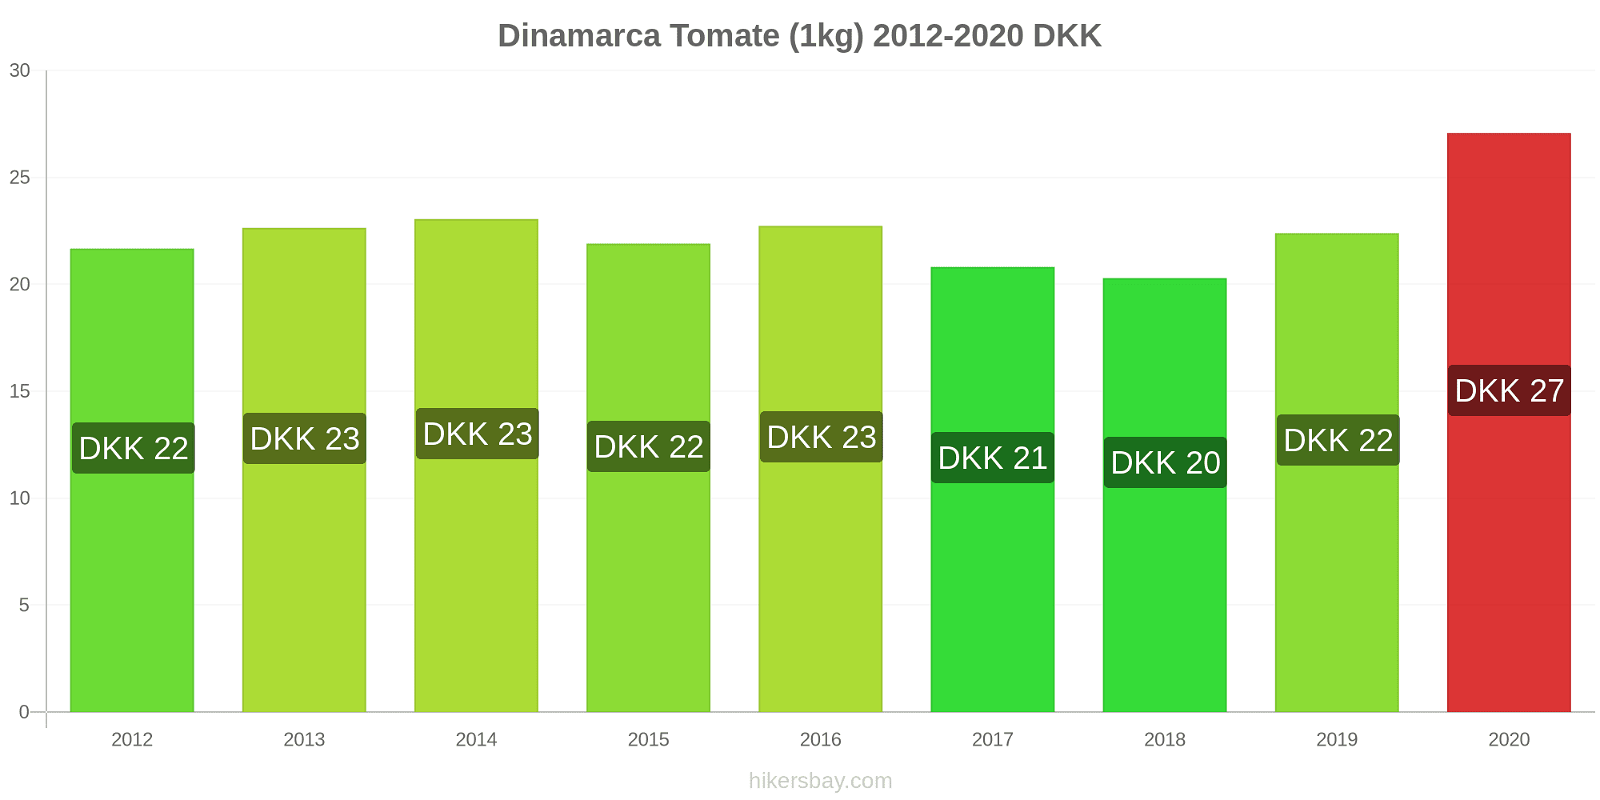 Dinamarca variação de preço Tomate (1kg) hikersbay.com